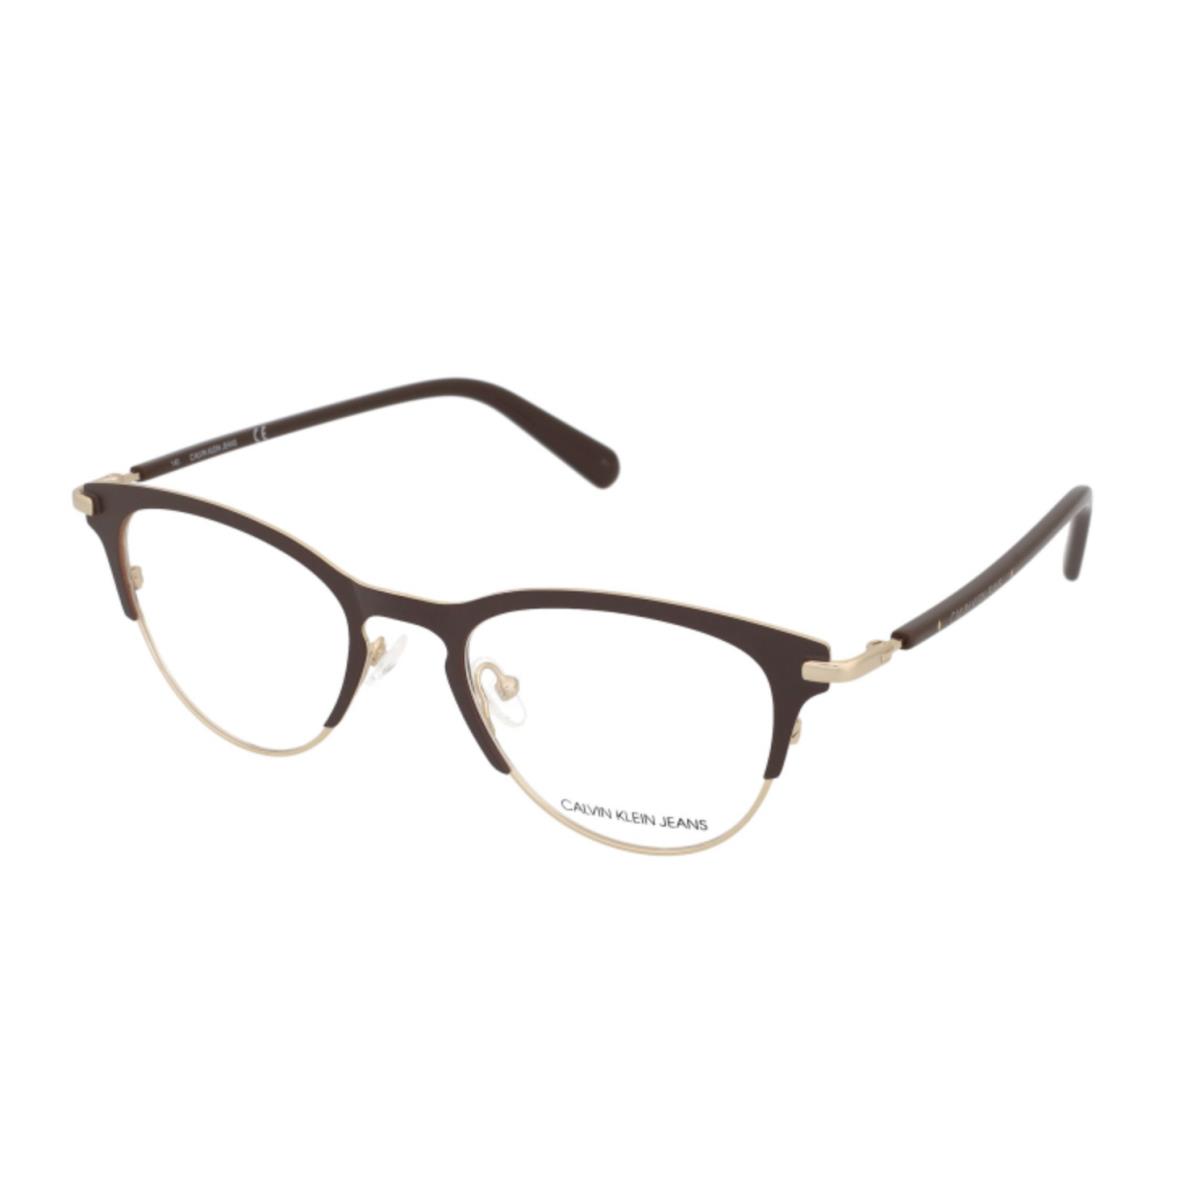 Calvin Klein CKJ20302 210 Brown Eyeglasses RX 49-19-140 W/ Case